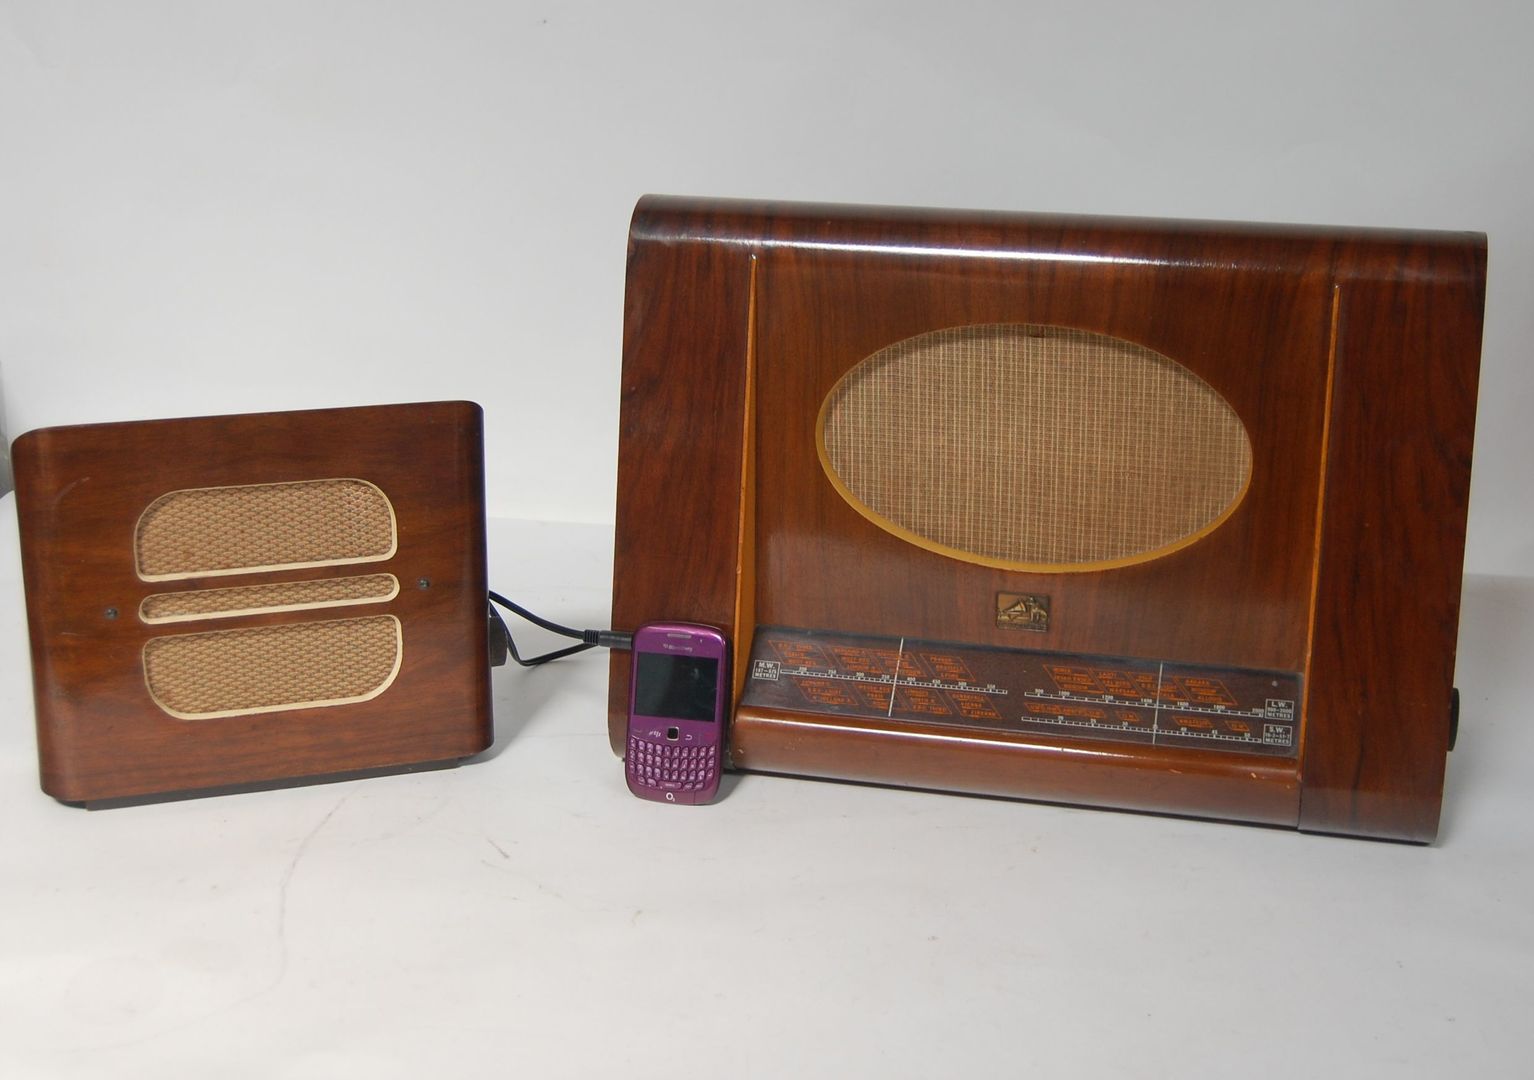 Vintage 1950s HMV Wooden Valve Radio Model 1122 & 1940s Stentorian Bristol Extension Wooden Speaker Retro Bazaar Ltd Ruang Keluarga Gaya Eklektik